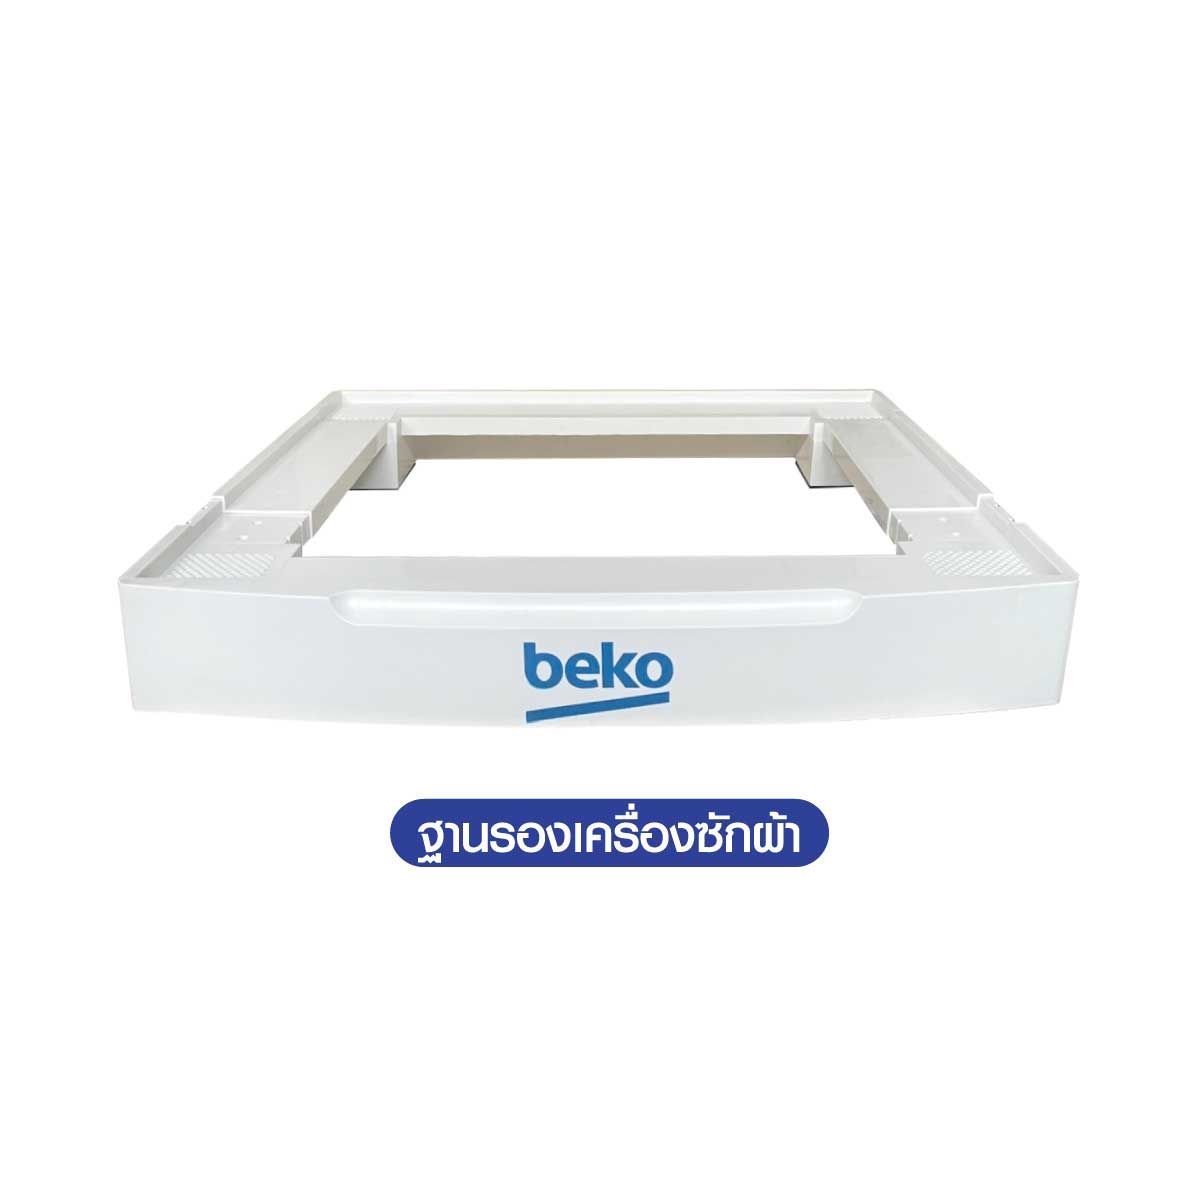 BEKO เครื่องซักผ้าฝาหน้า Inverter 10 กก.  สีขาว รุ่น WCV10649XWST